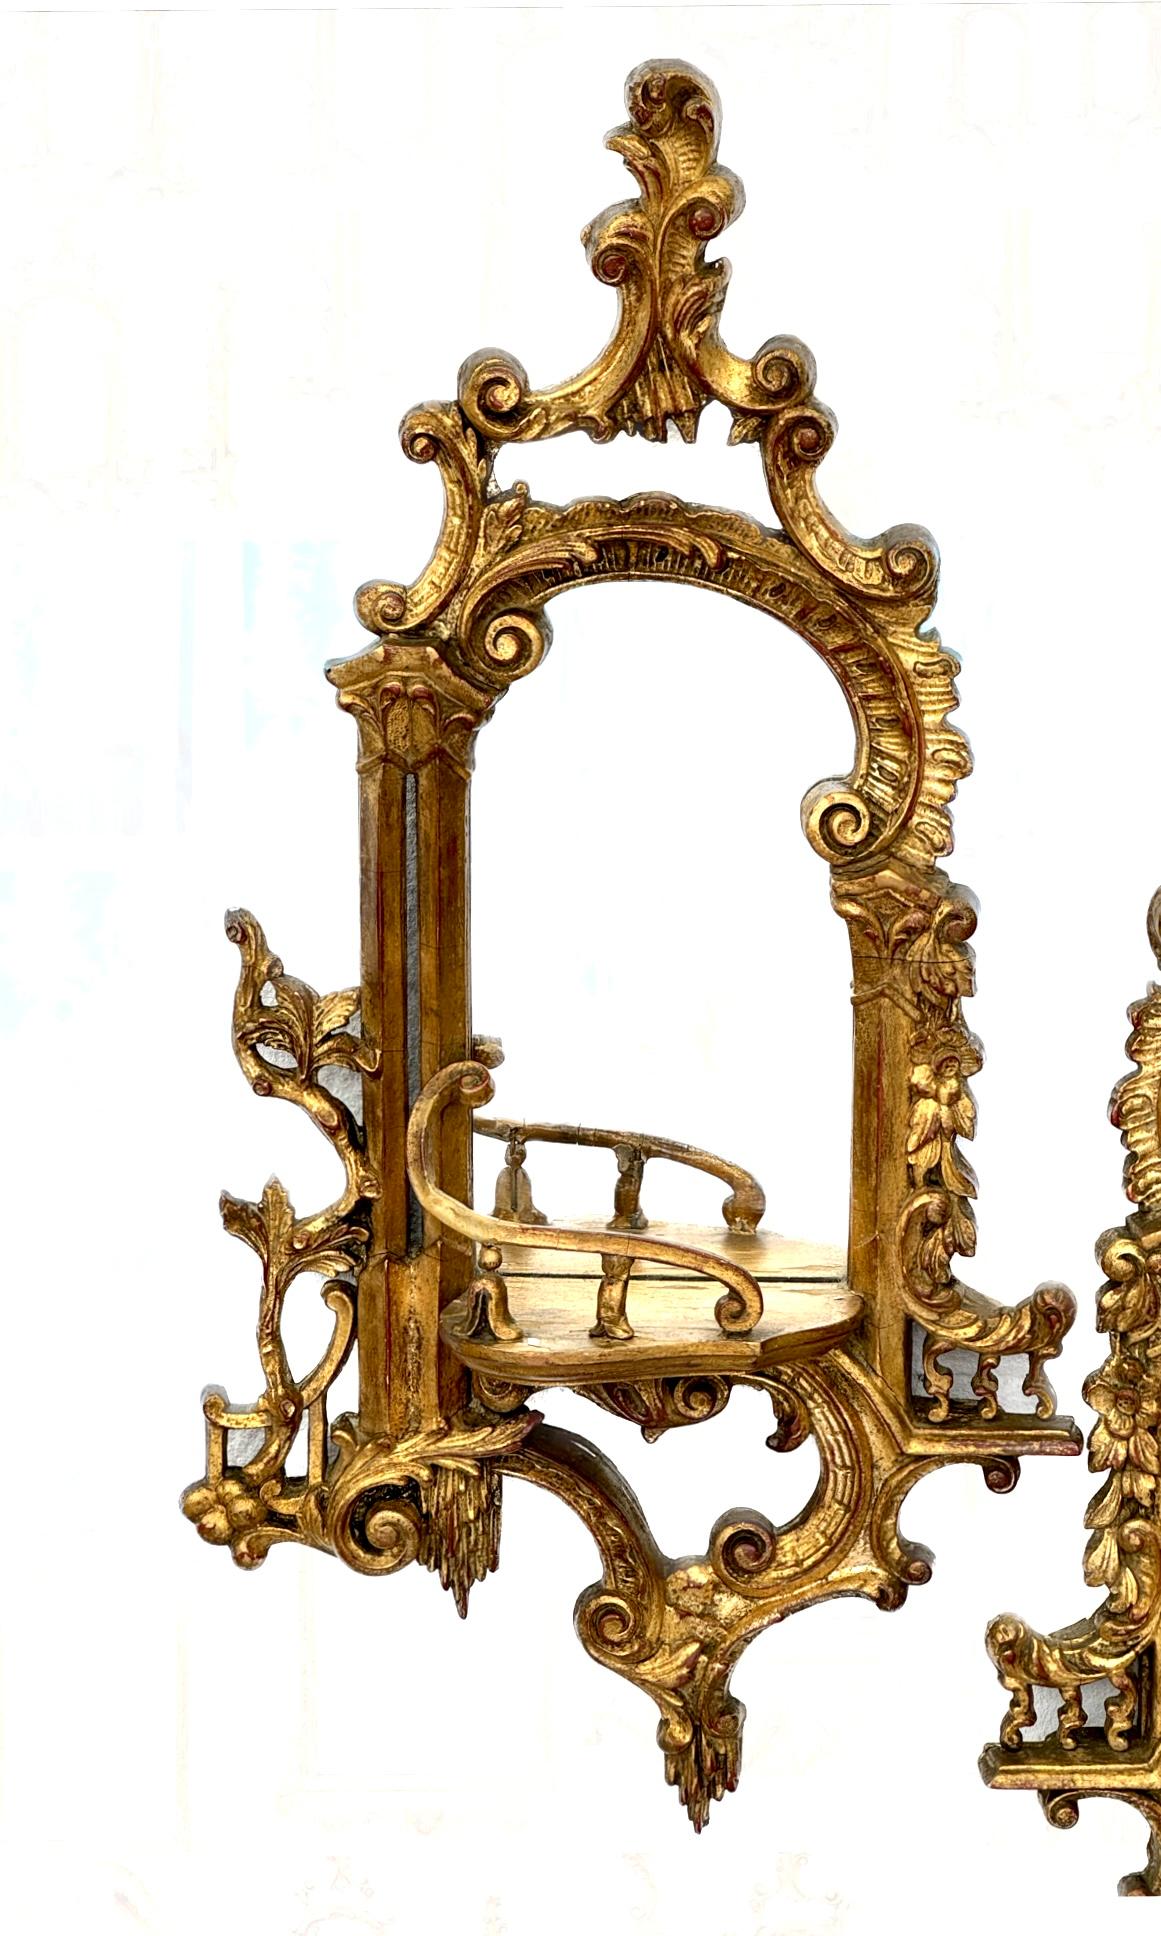 Paire de consoles murales à miroir en bois doré et plâtre de style Chippendale chinois du 19e siècle. Les consoles présentent un décor classique chinois de style Chippendale, avec des feuillages enroulés et dorés, et des dos en miroir.